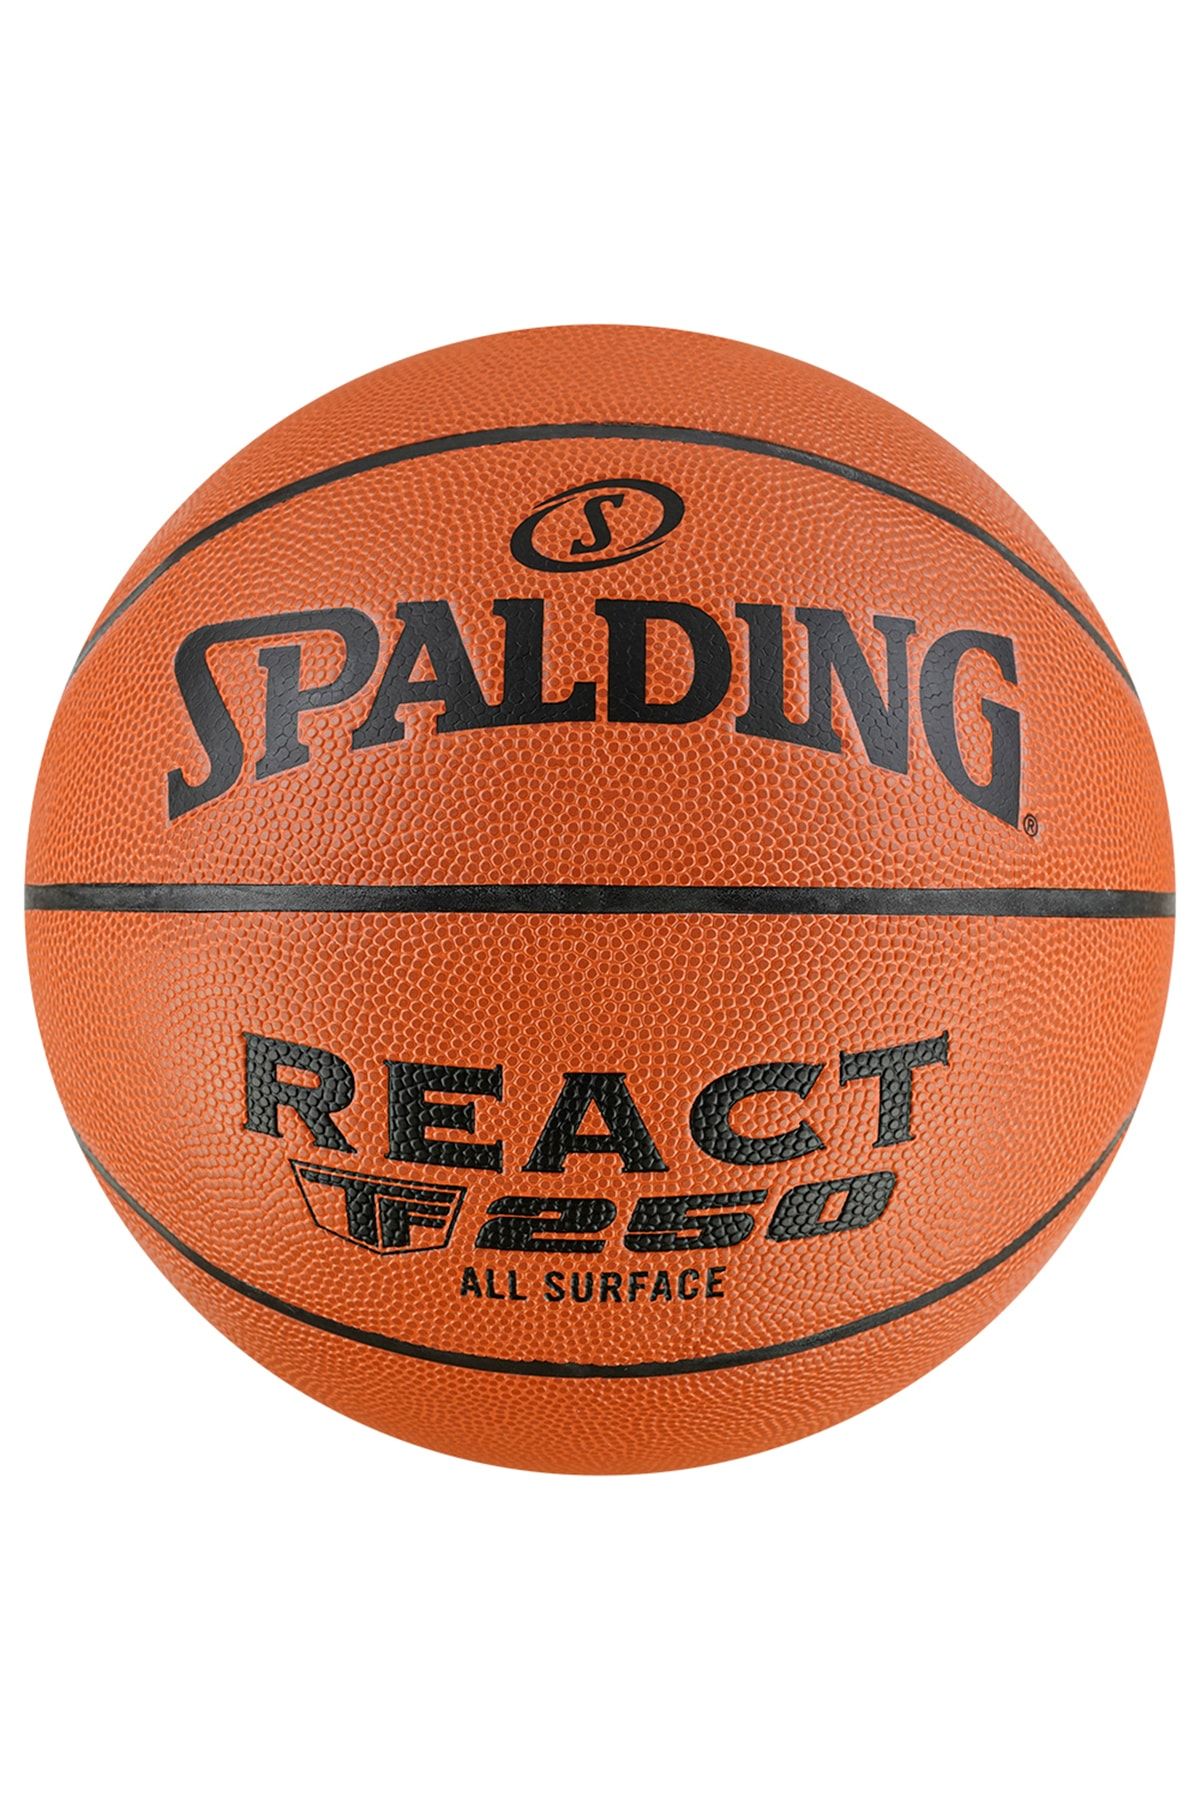 Spalding React Tf250 All Surface 5 No Basketbol Topu